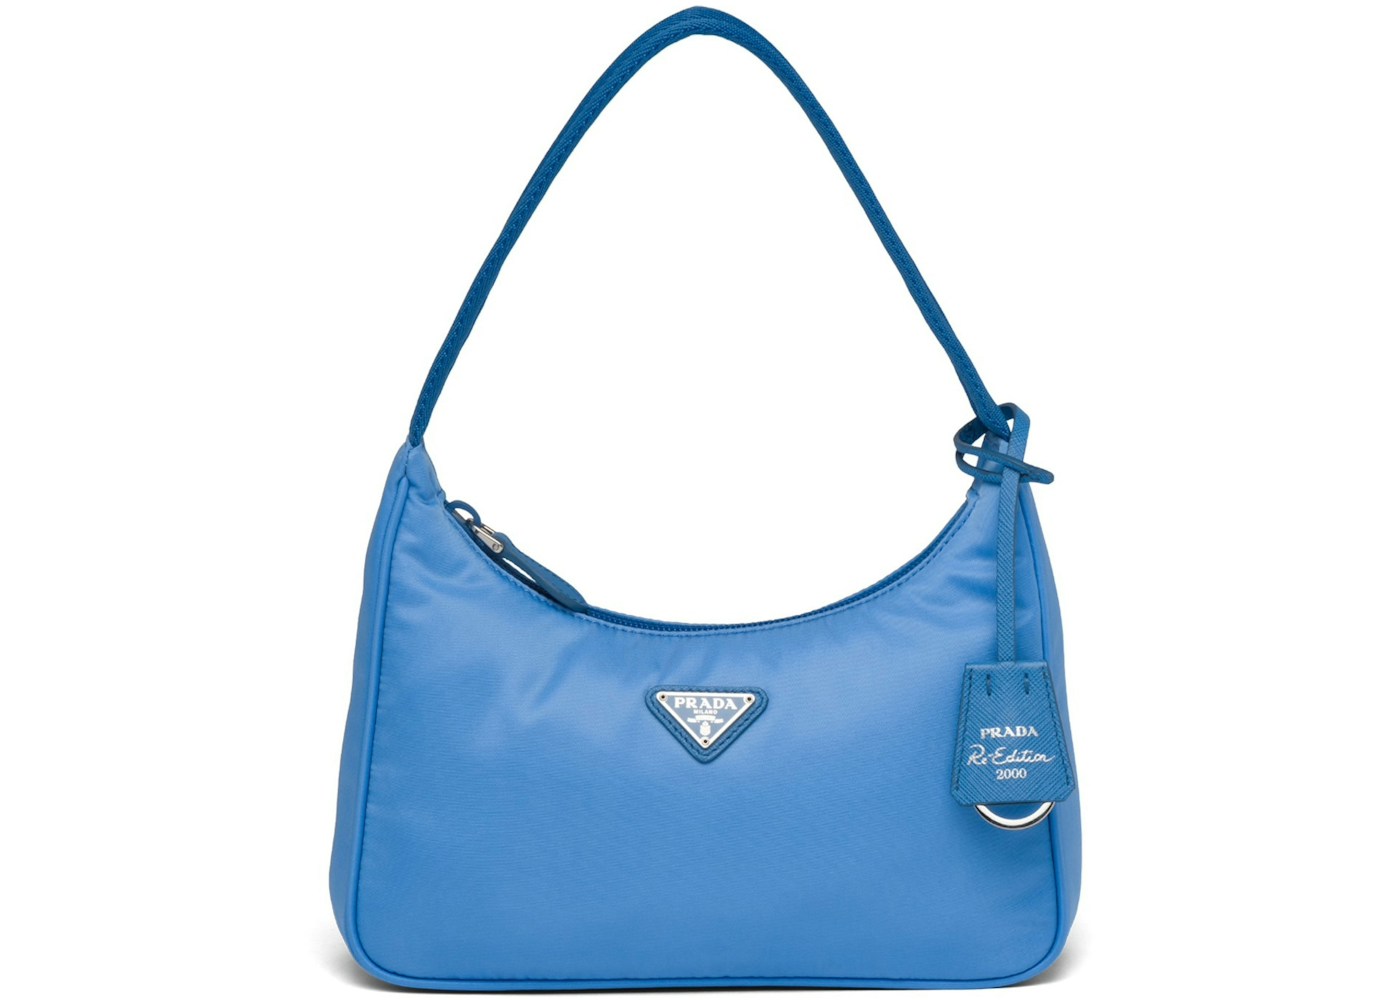 Prada Re-Edition 2000 Mini Bag Nylon Periwinkle Blue in Nylon/Saffiano